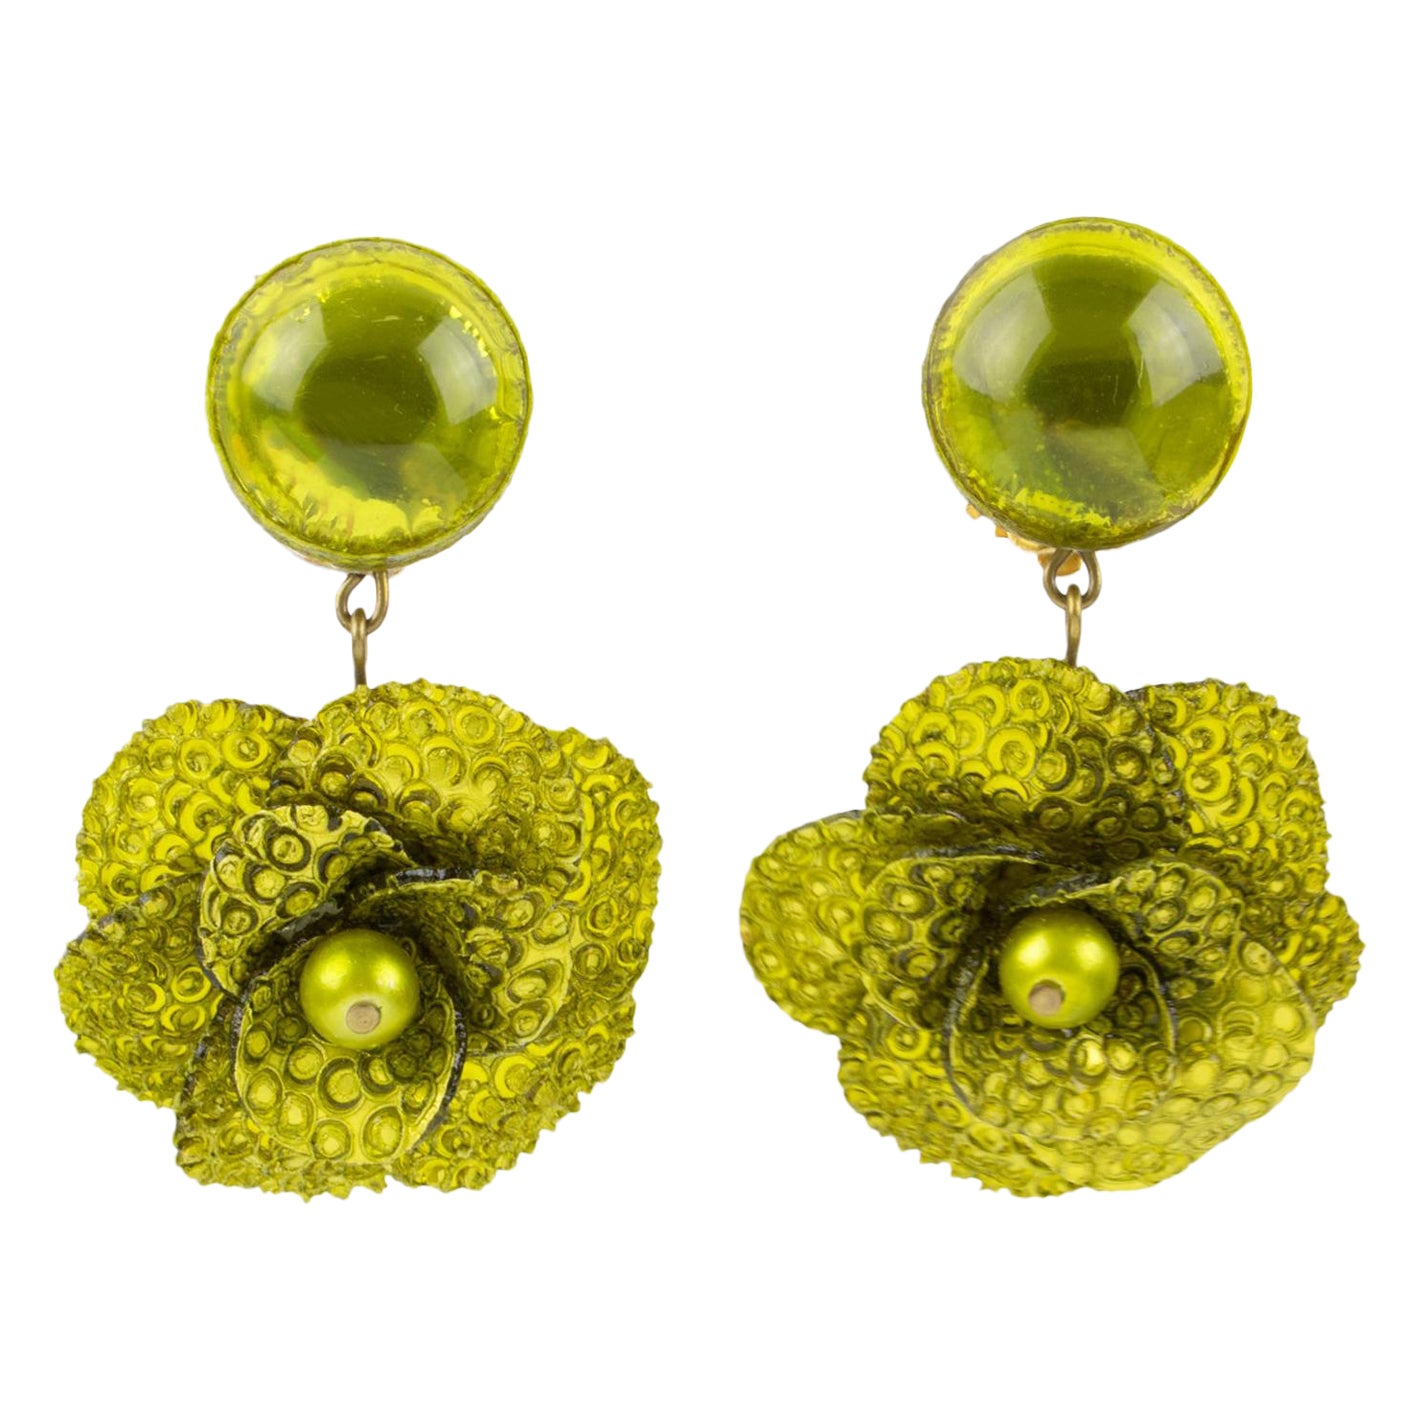 Francoise Montague by Cilea Resin Clip Earrings Green Poppy Flower